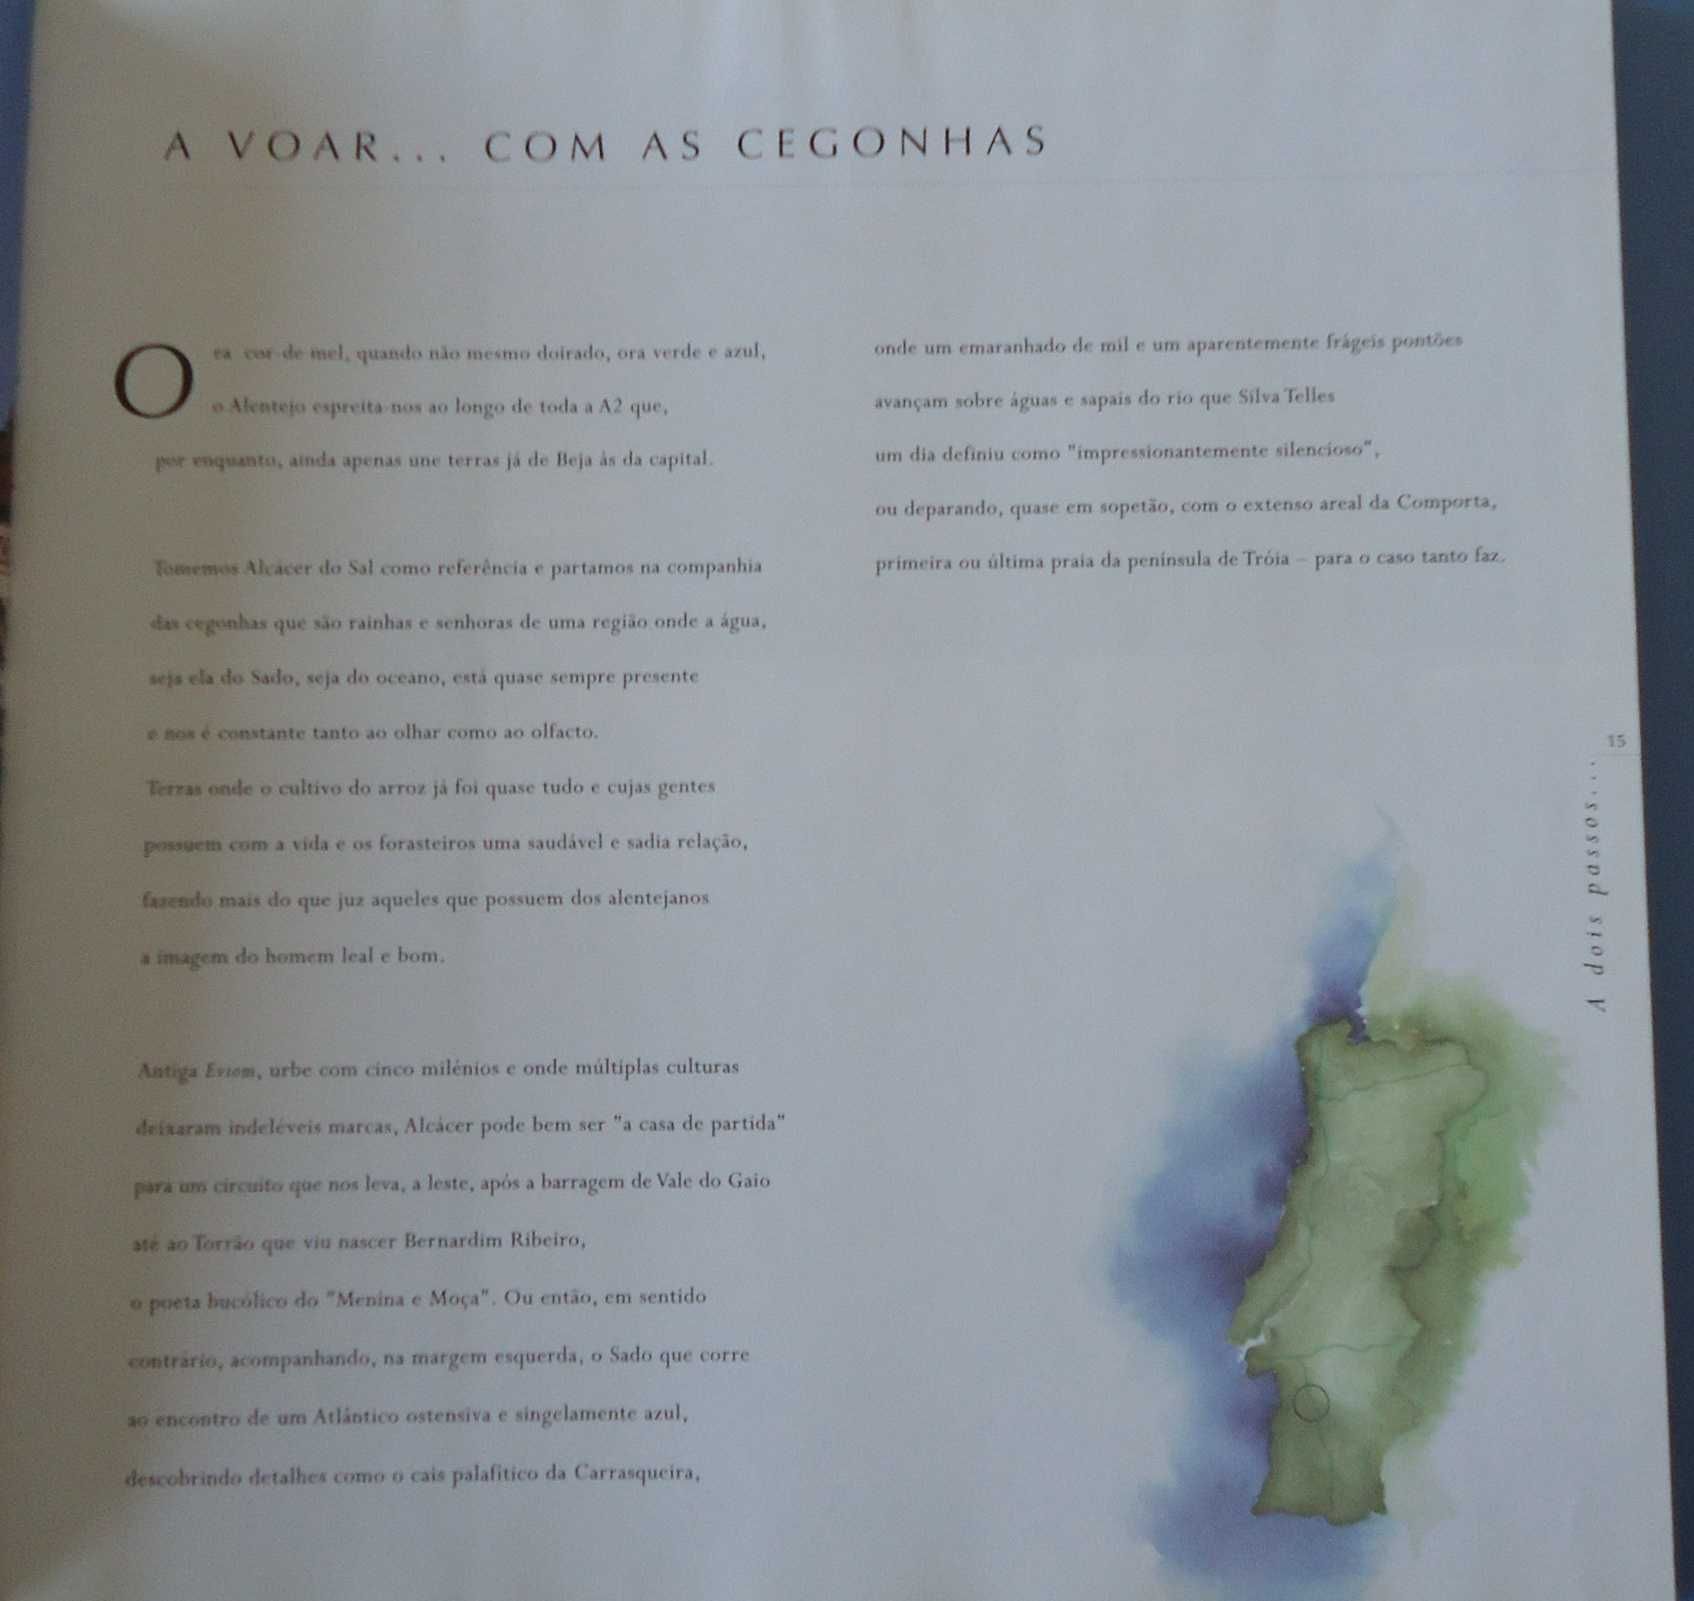 Livro "A dois passos..." sobre Portugal - Edição exclusiva da Brisa